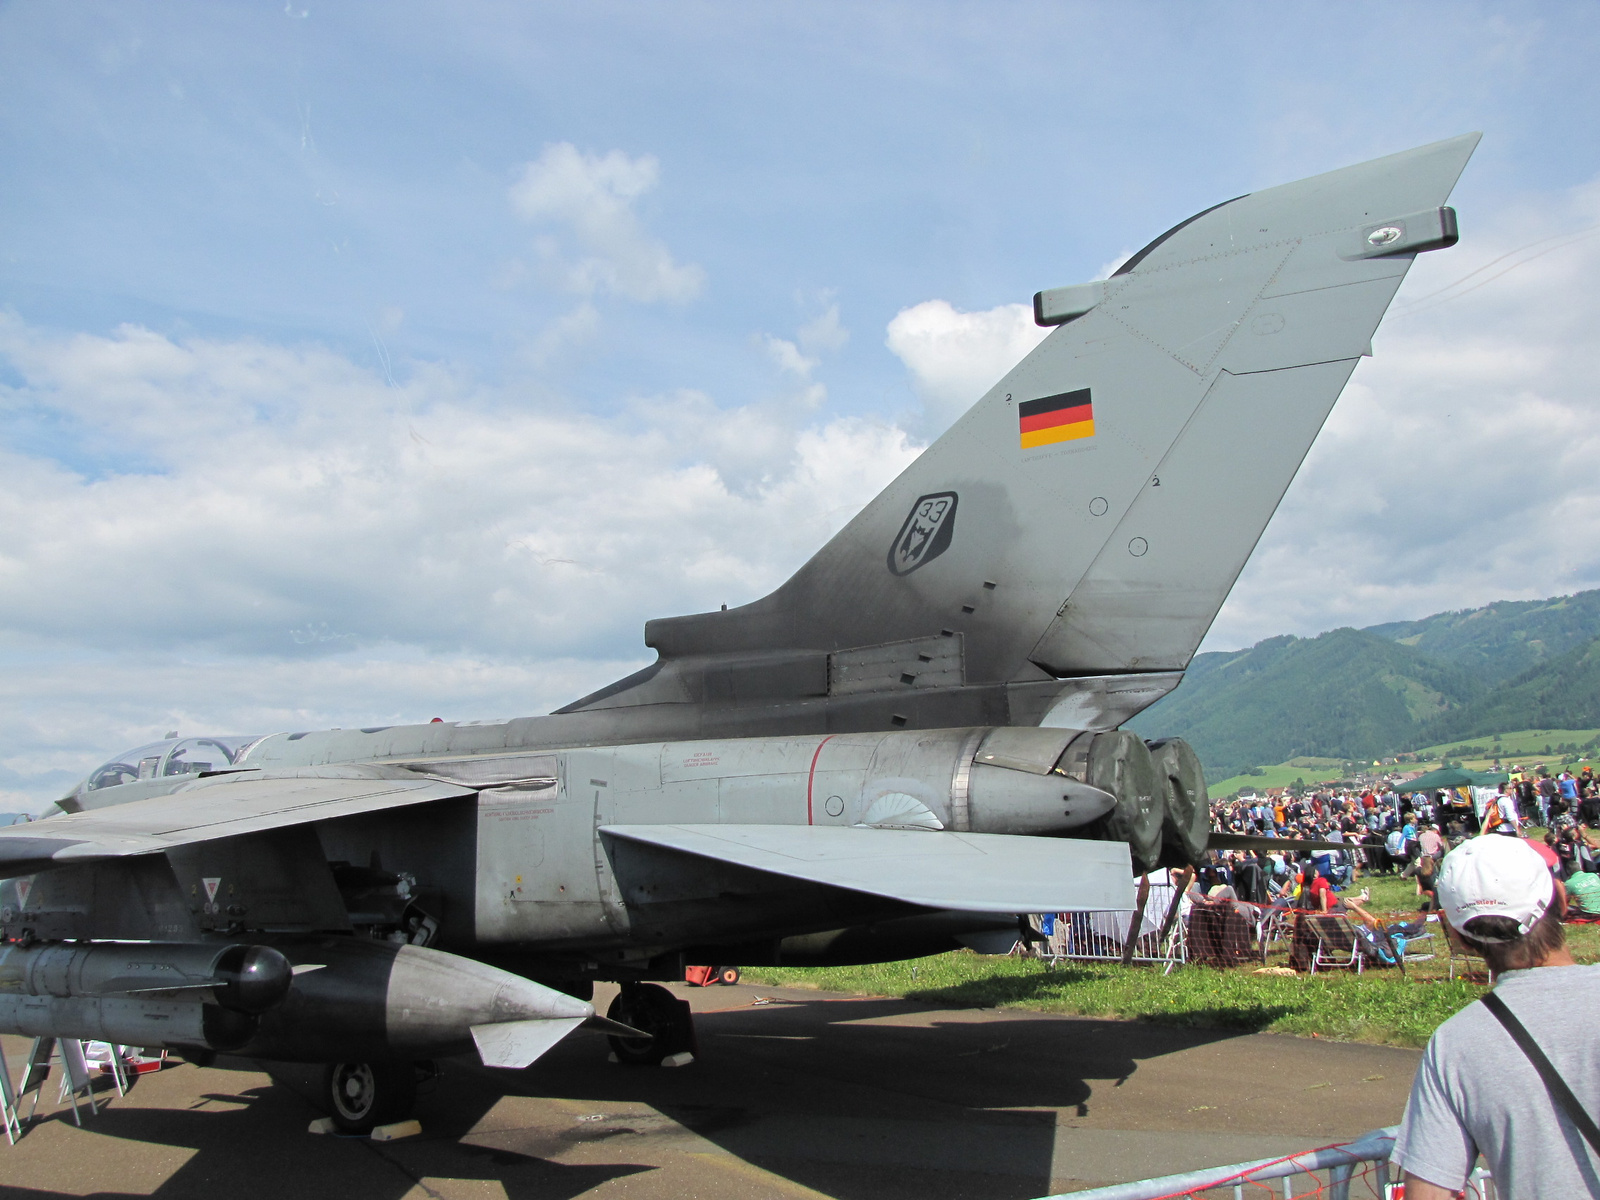 Zeltweg, Airpower 2013, Panavia Tornado, SzG3